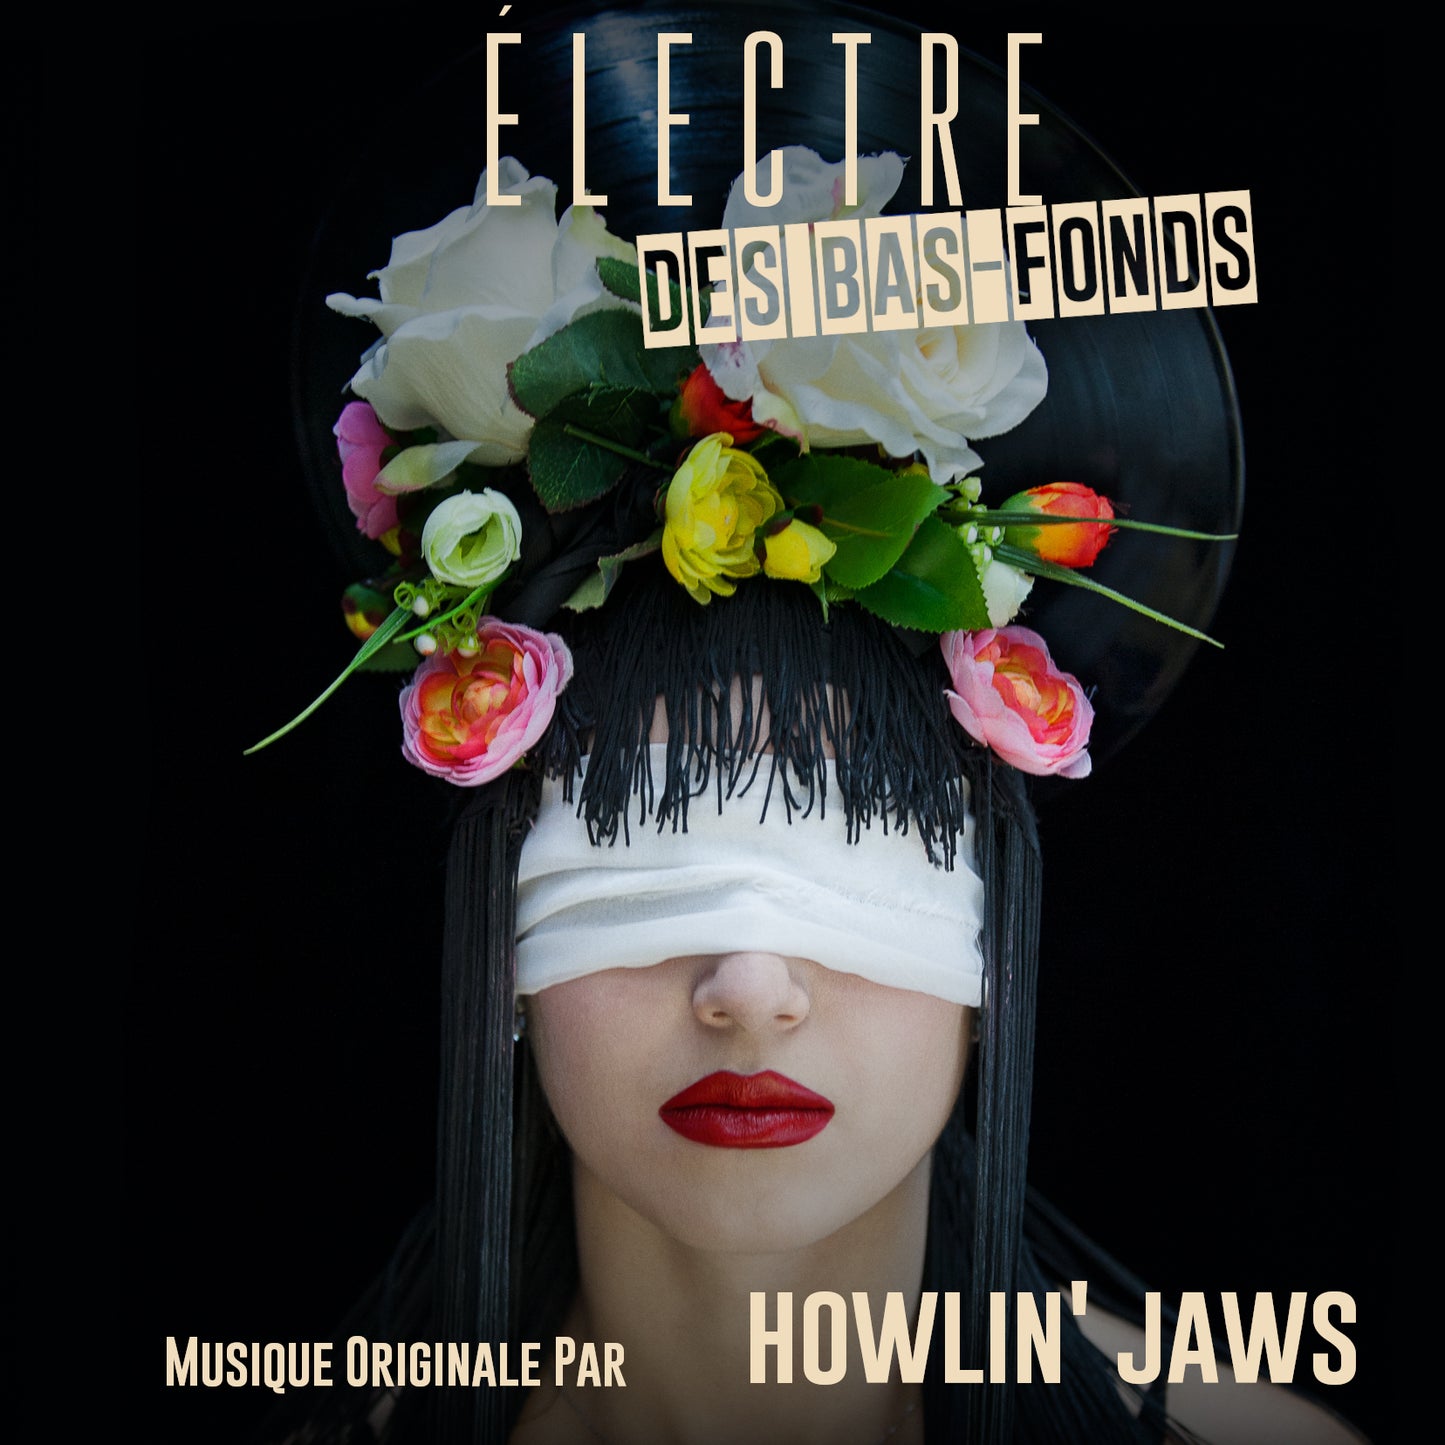 CD "ELECTRE DES BAS-FONDS", Musique originale par Howlin' Jaws